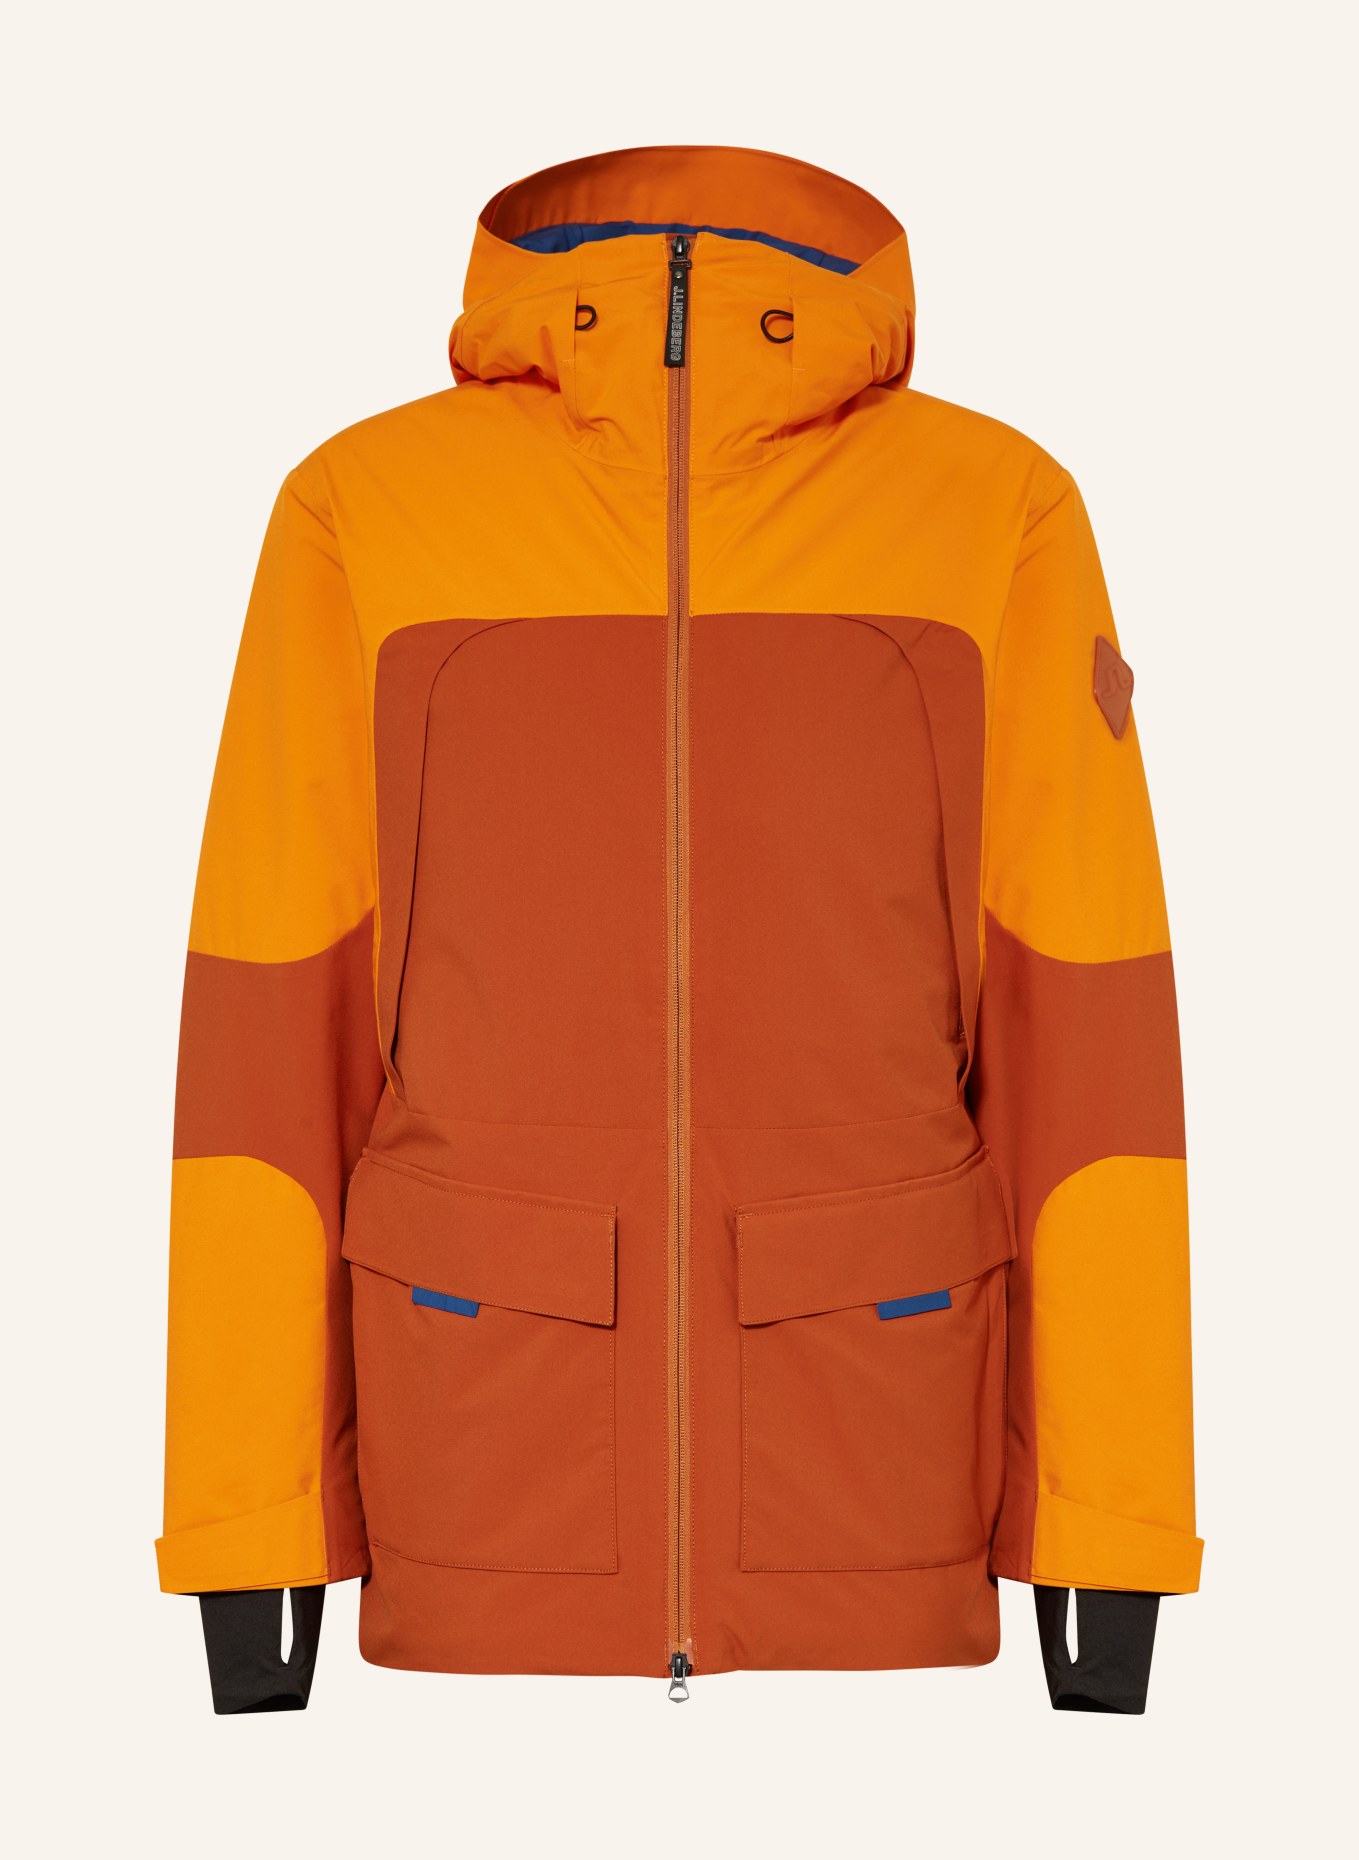 orange/ Ski jacket orange/ blue dark J.LINDEBERG in